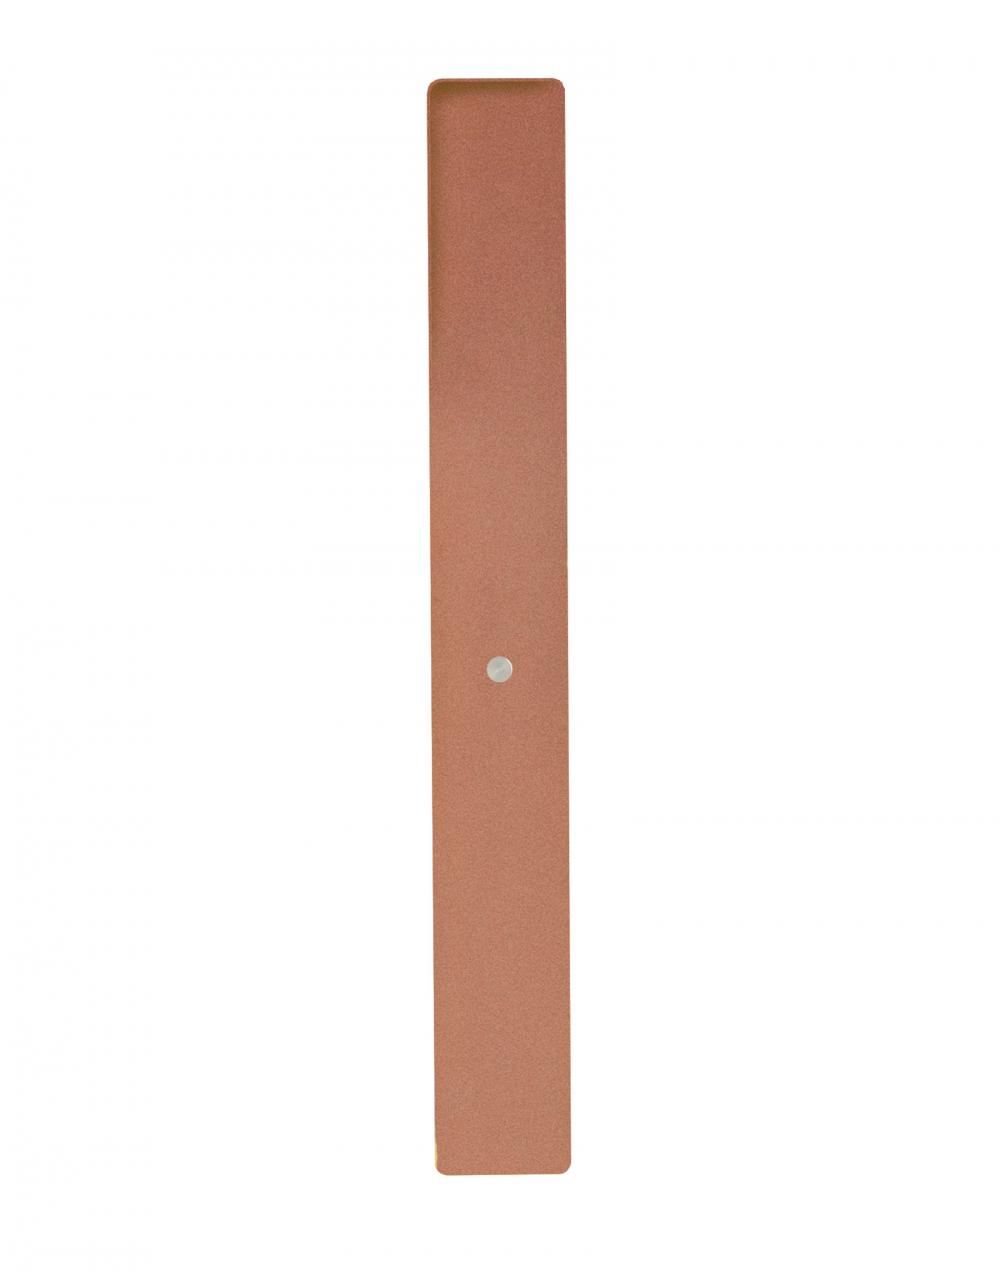 Divar Model Wall Light Copper 15 Polished